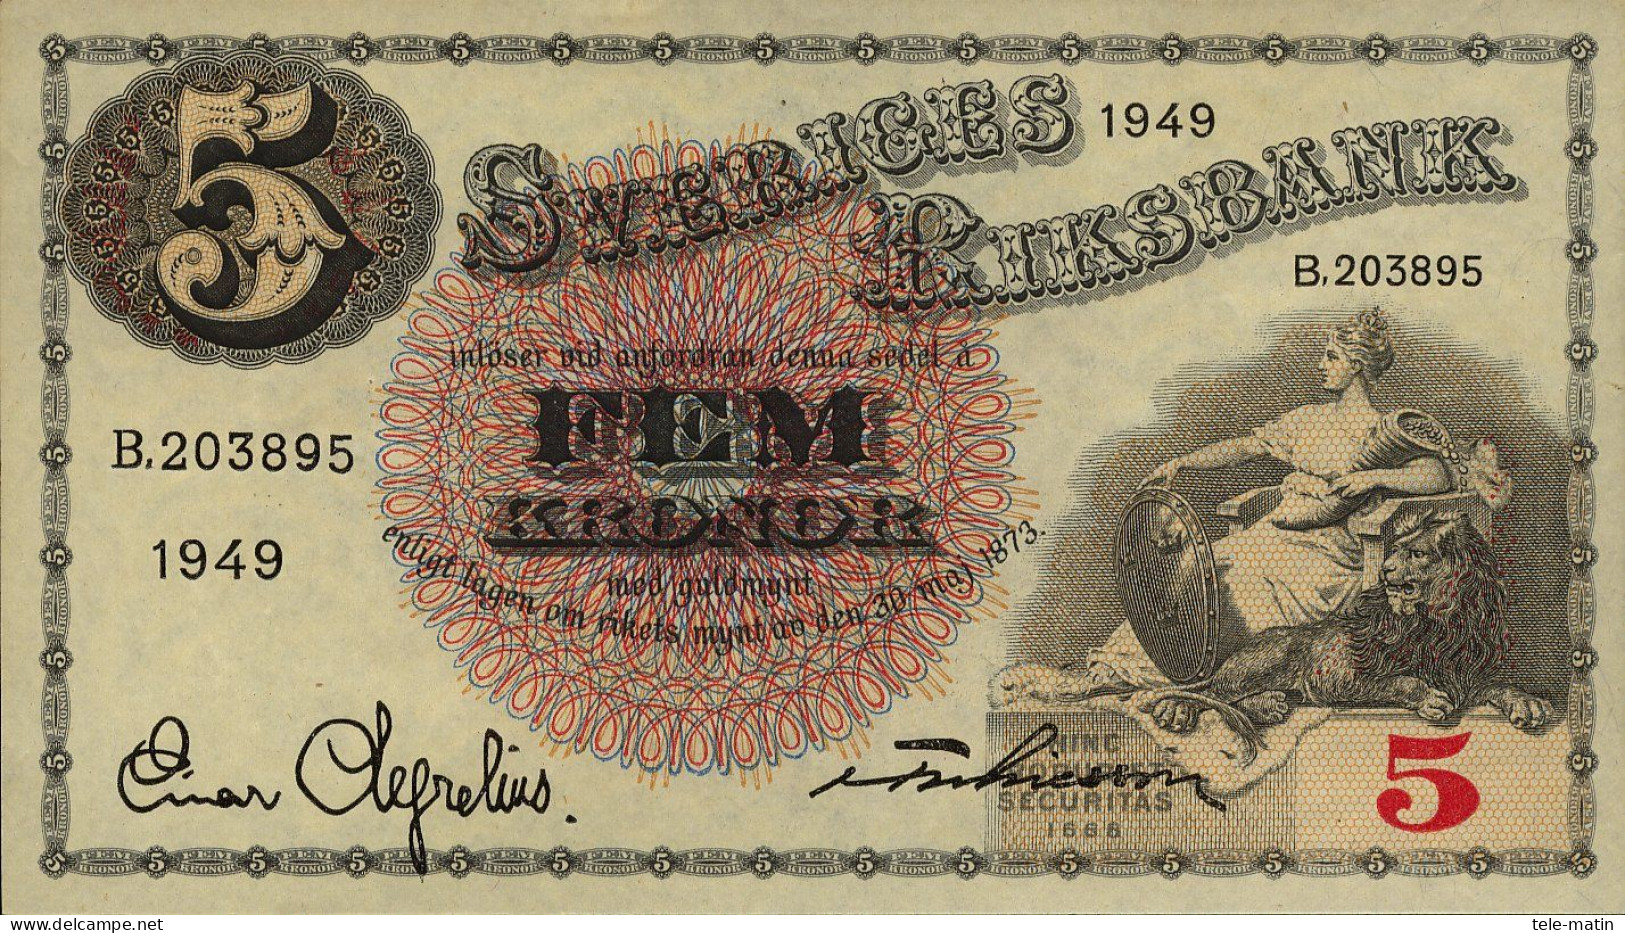 5 Billets De Suède De 5 Kroner1949 Et 1952 Et 1963 Et 1979 Et 10 Kroner 1975 (billets Neuf) - Sweden